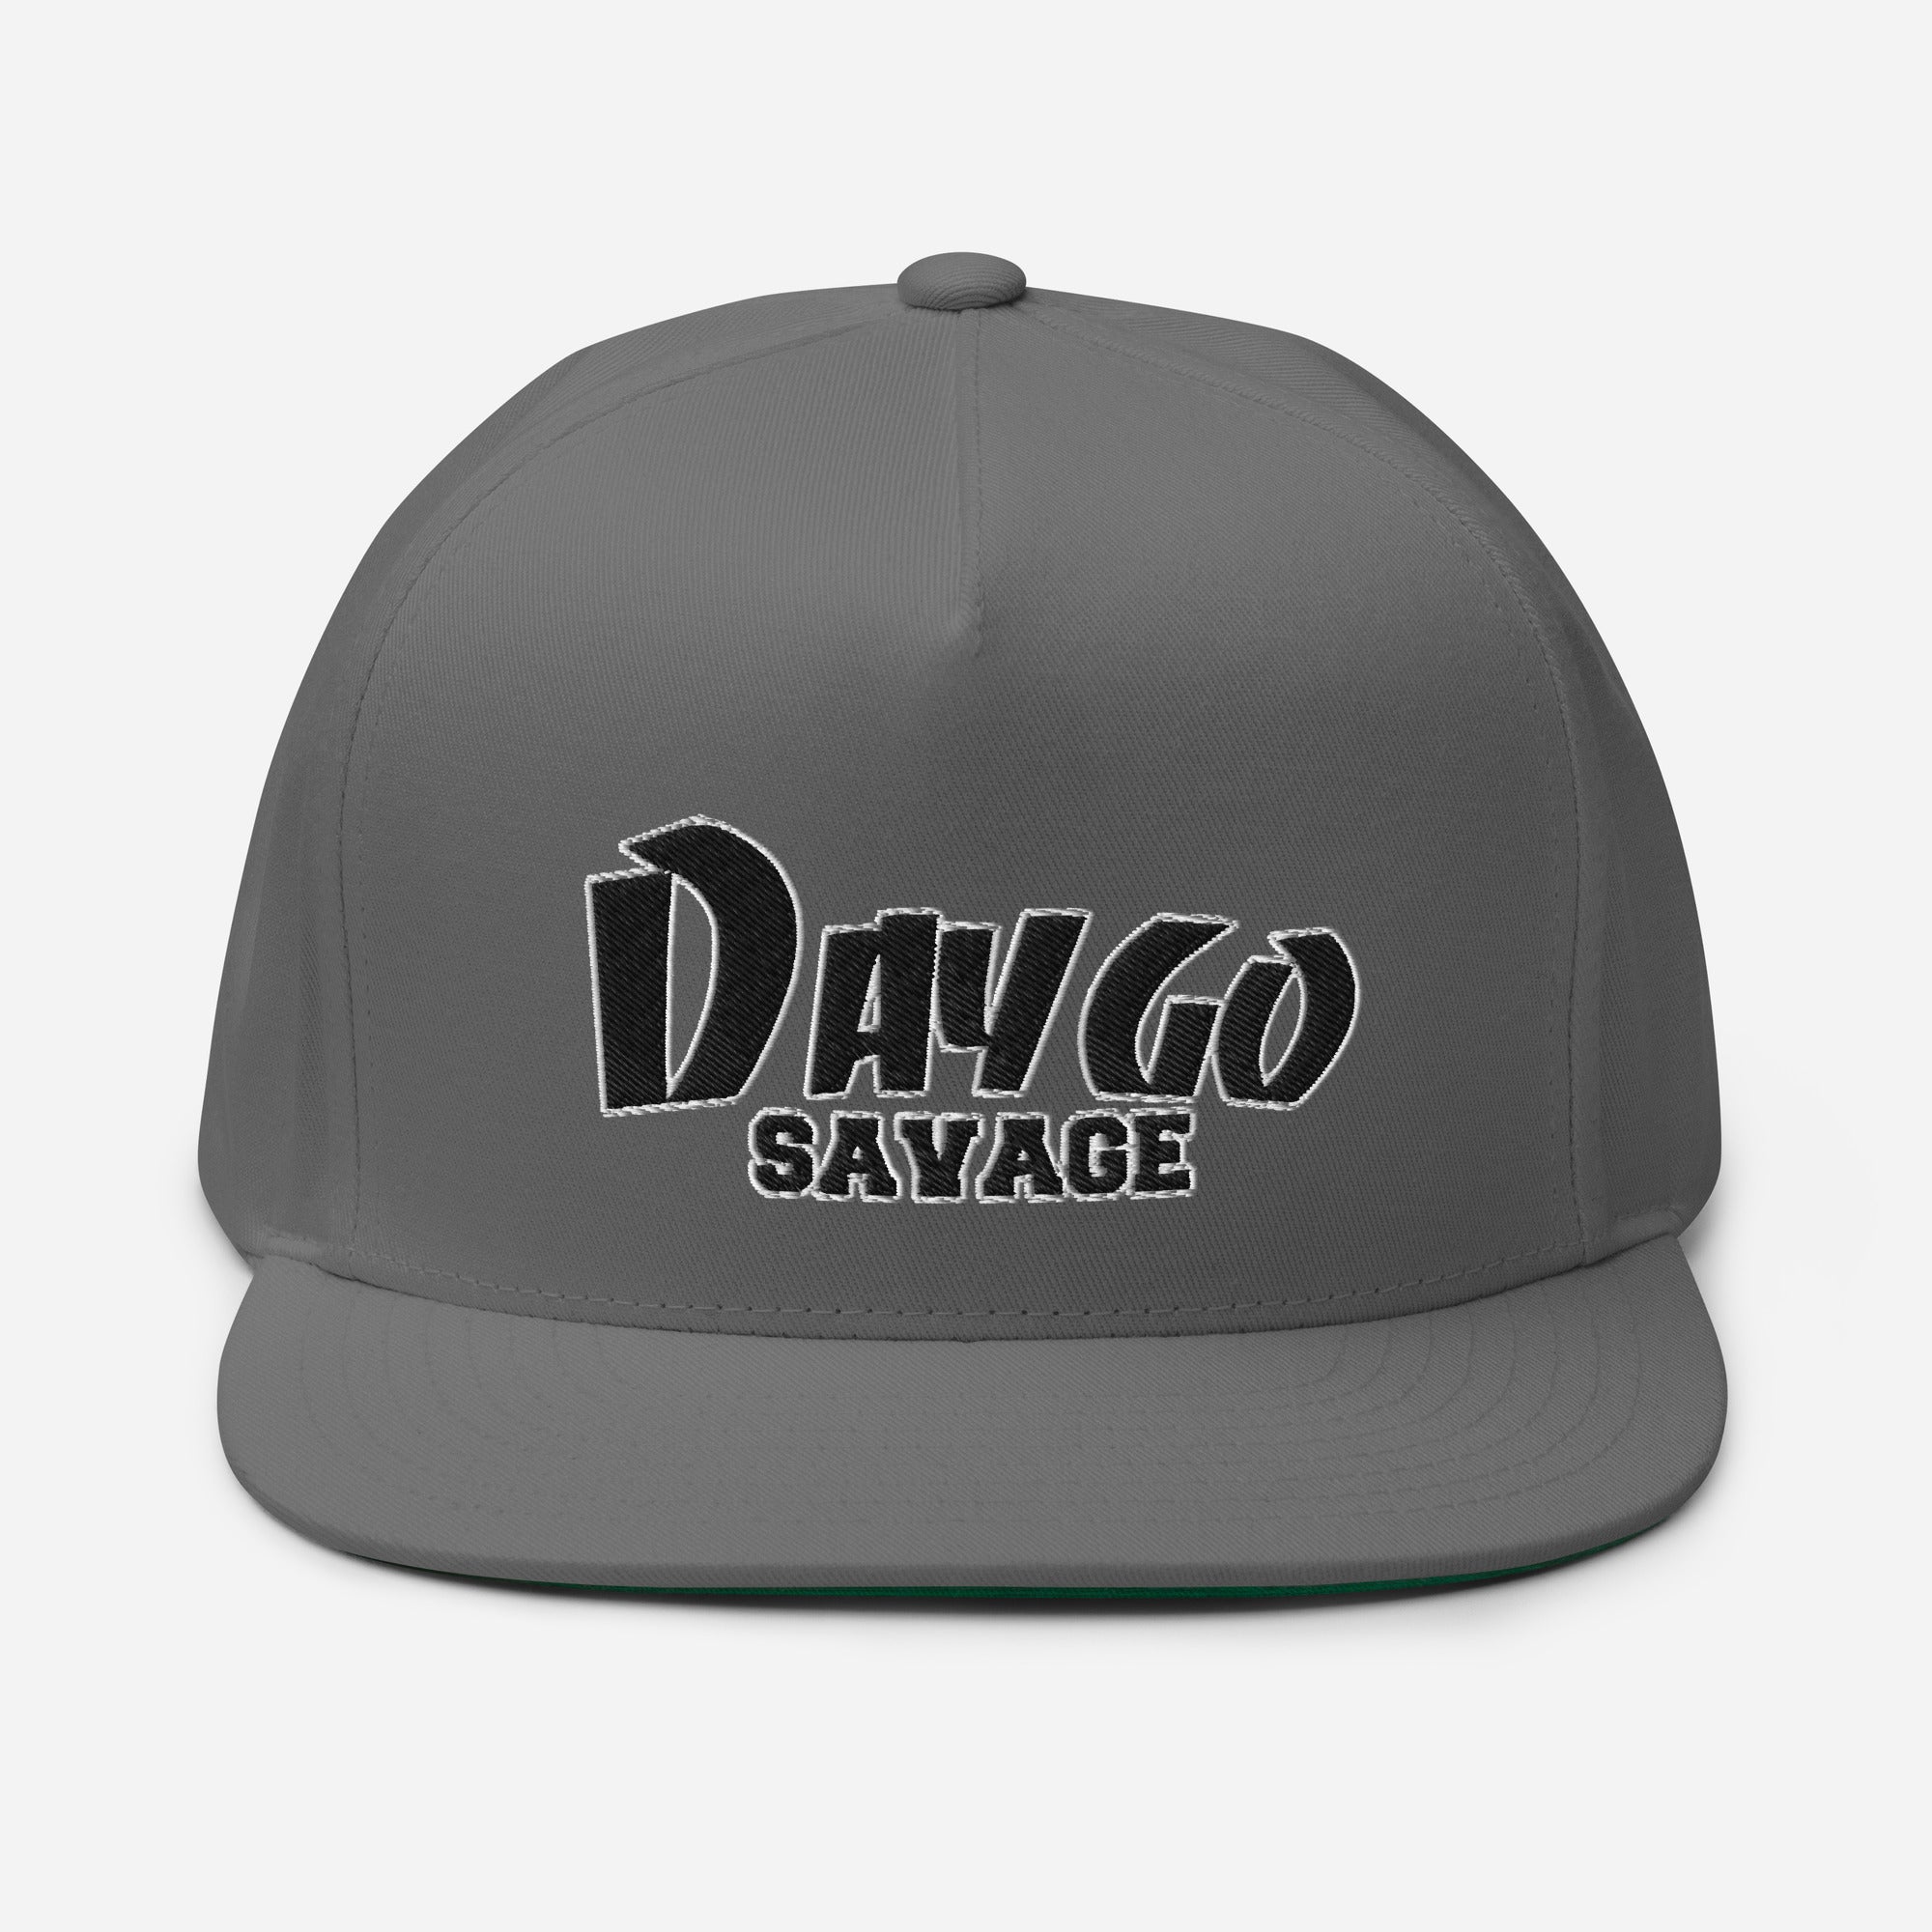 Daygo Savage